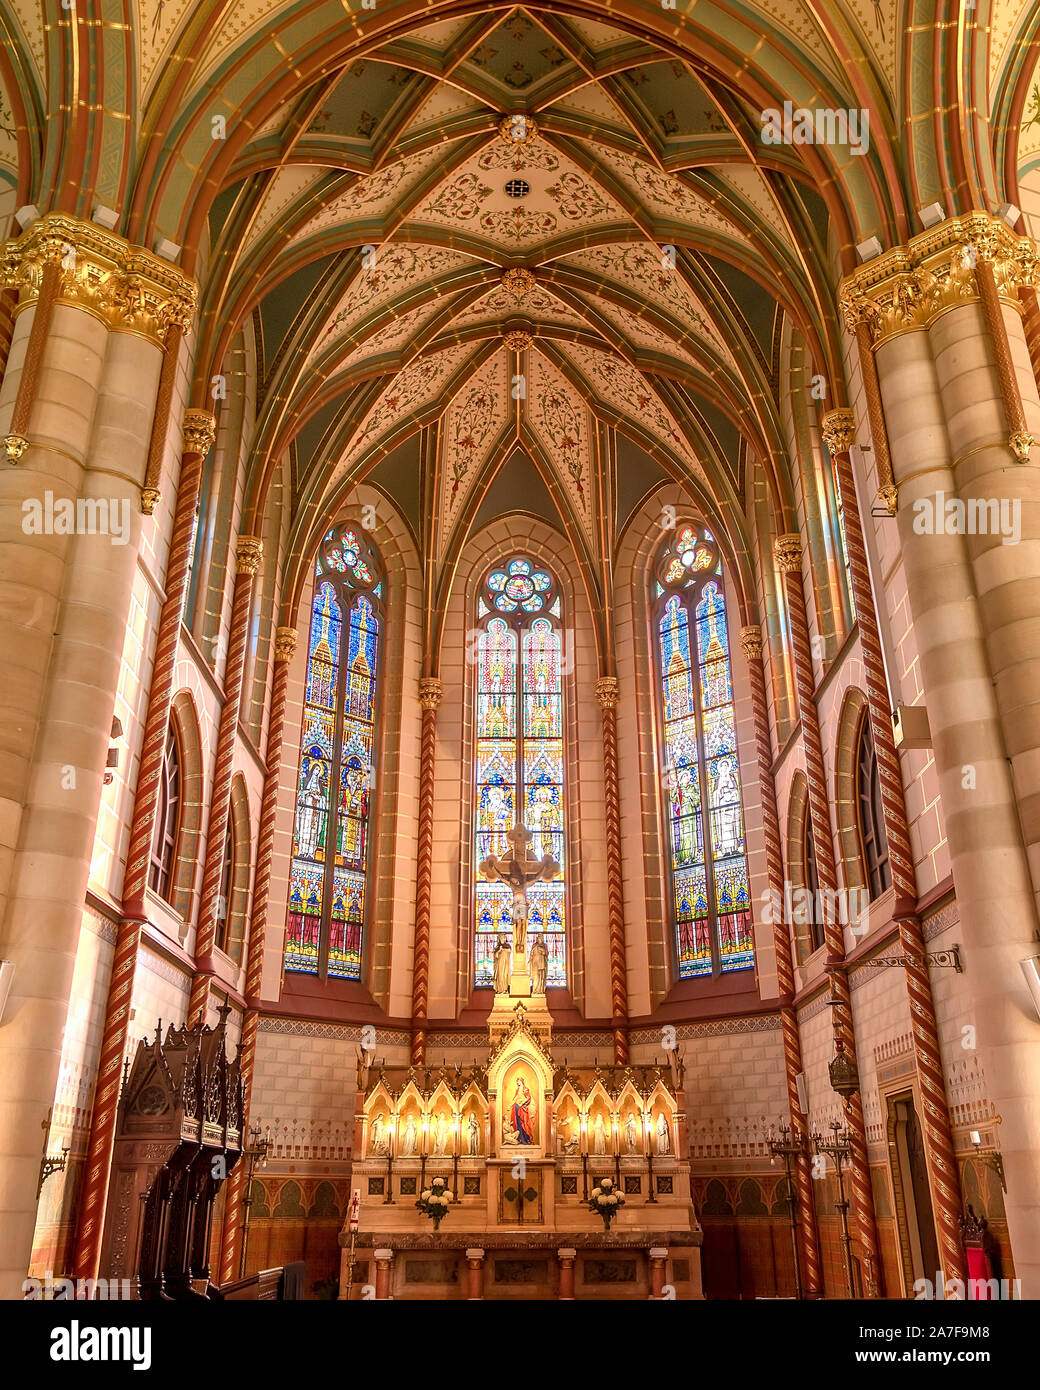 Iglesia parroquial de Santa Isabel es una casa de Árpád menos famosa iglesia en Budapest. Hermoso lugar con Absoulutely interior alucinante.⁣ estilo neogótico hi Foto de stock